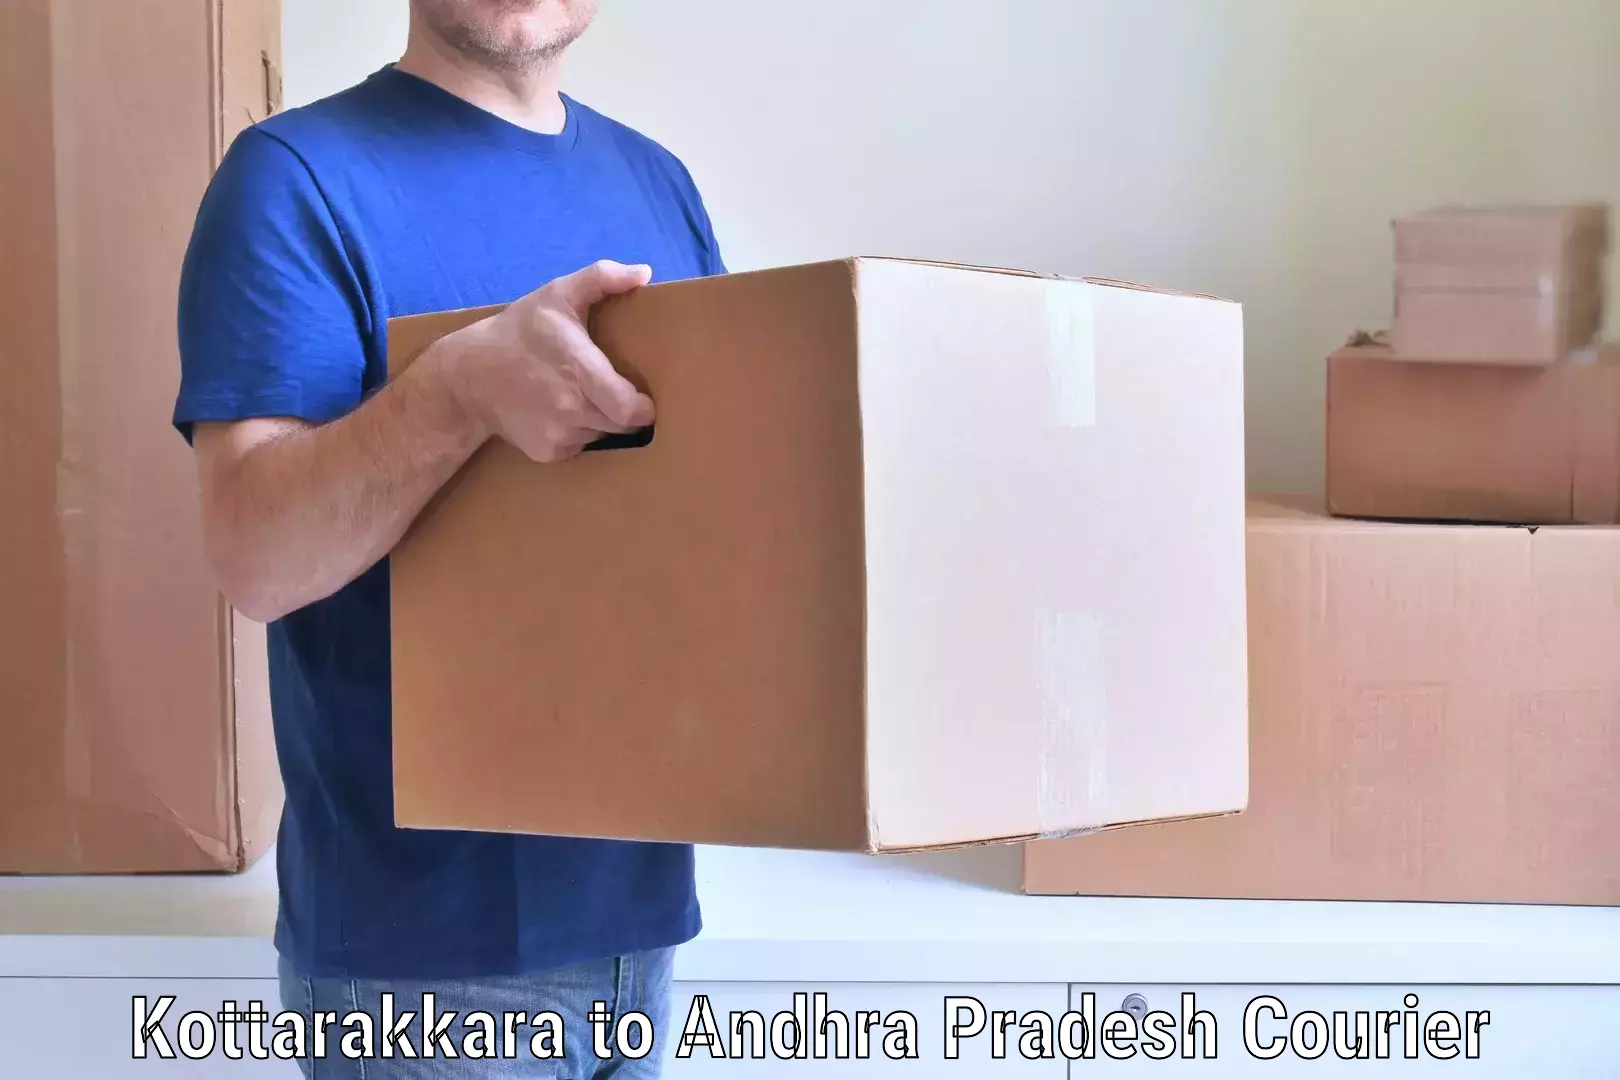 Reliable movers Kottarakkara to Cumbum Prakasam